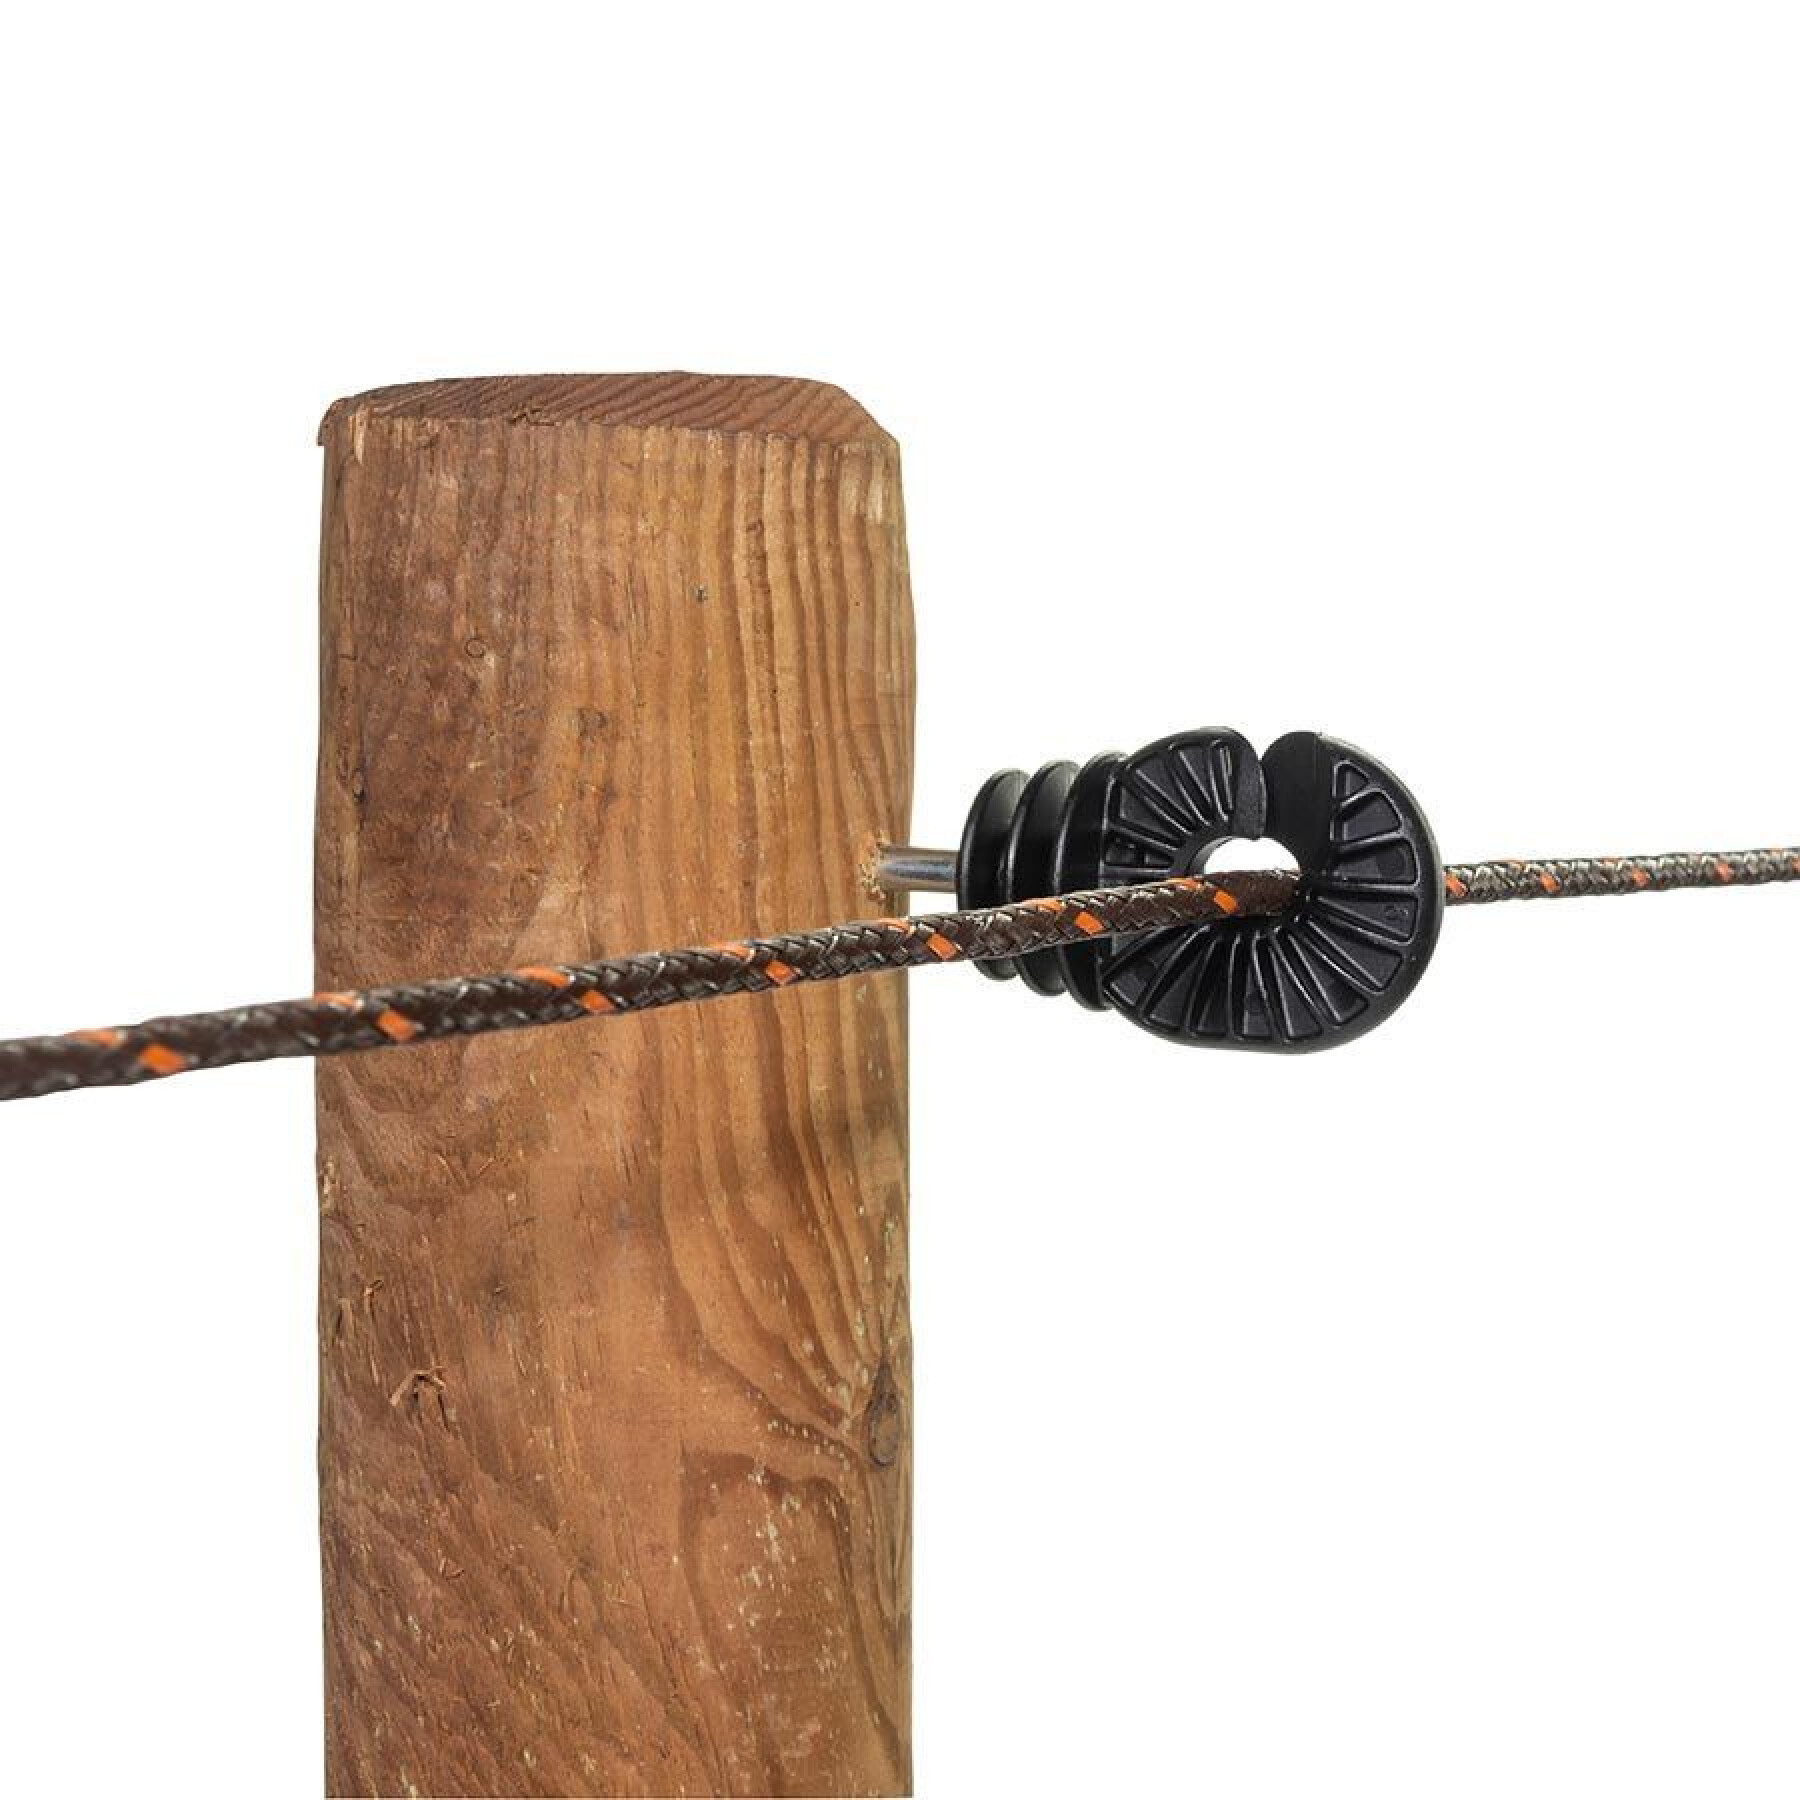 Aisladores para cercas eléctricas de tornillo bs super wood Gallagher (x25)